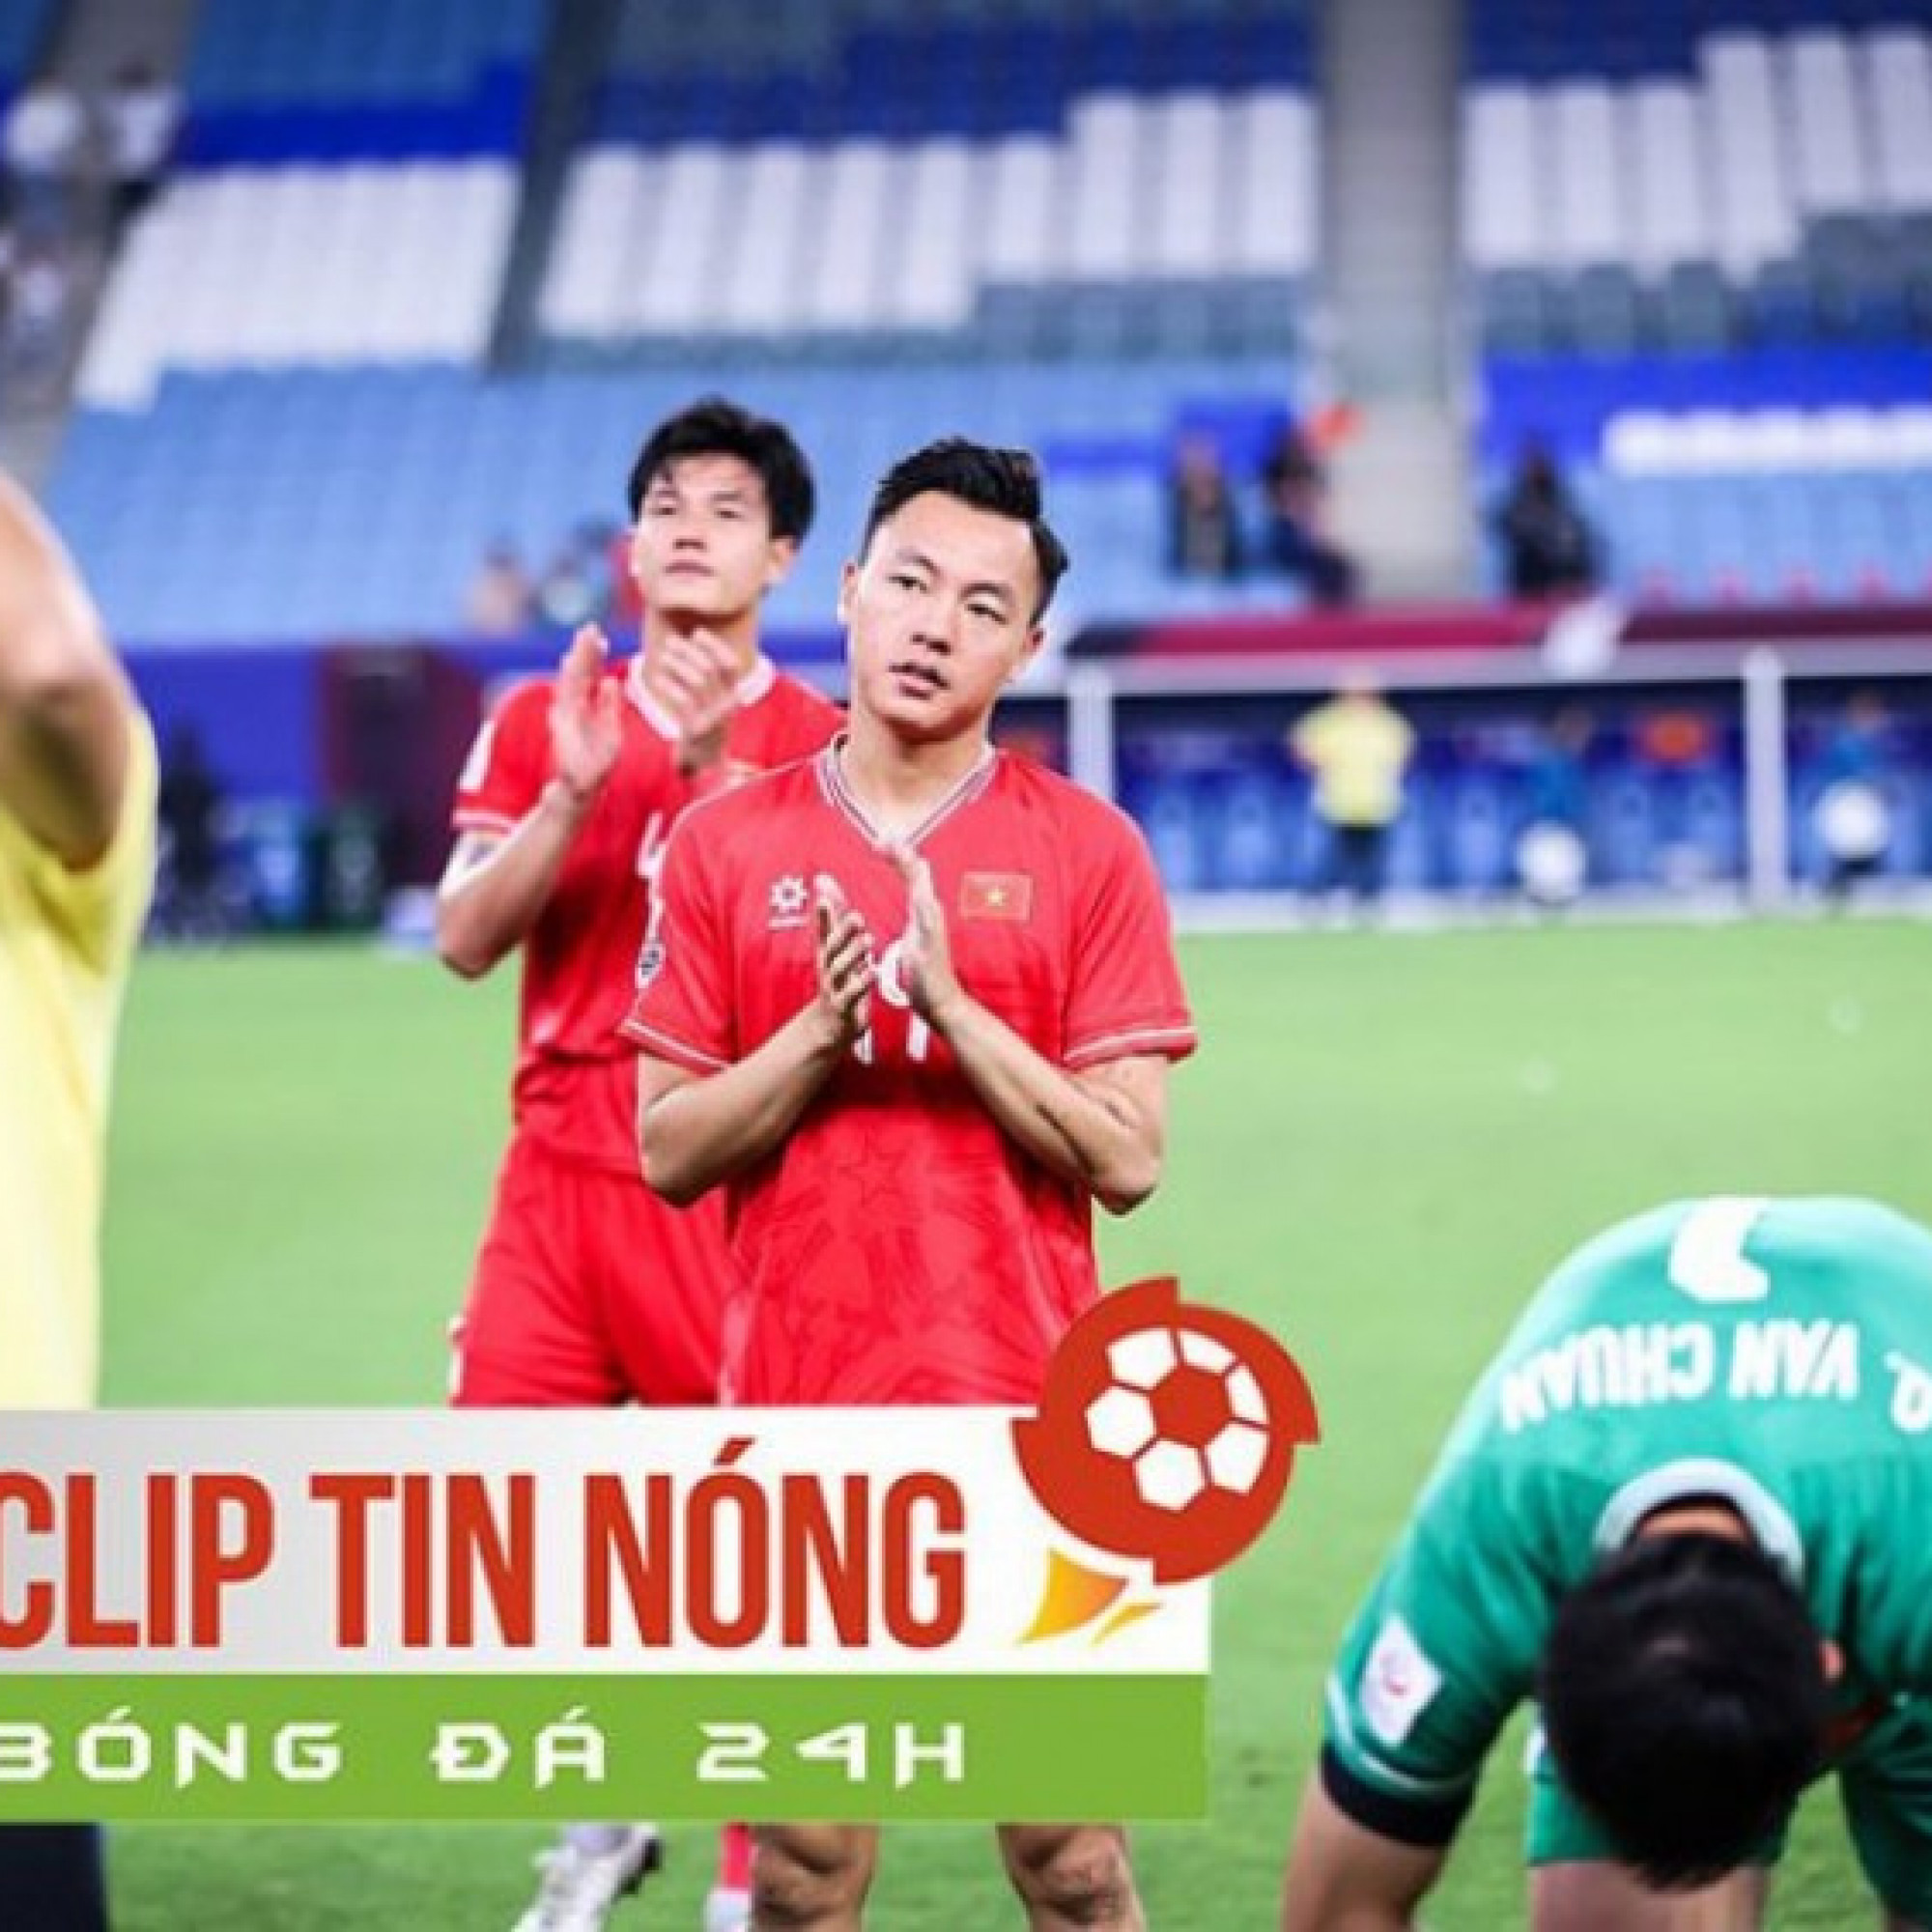  - U23 Việt Nam tiếp nối năm "hạn" của bóng đá Việt ở 4 giải lớn (Clip Tin nóng bóng đá 24h)